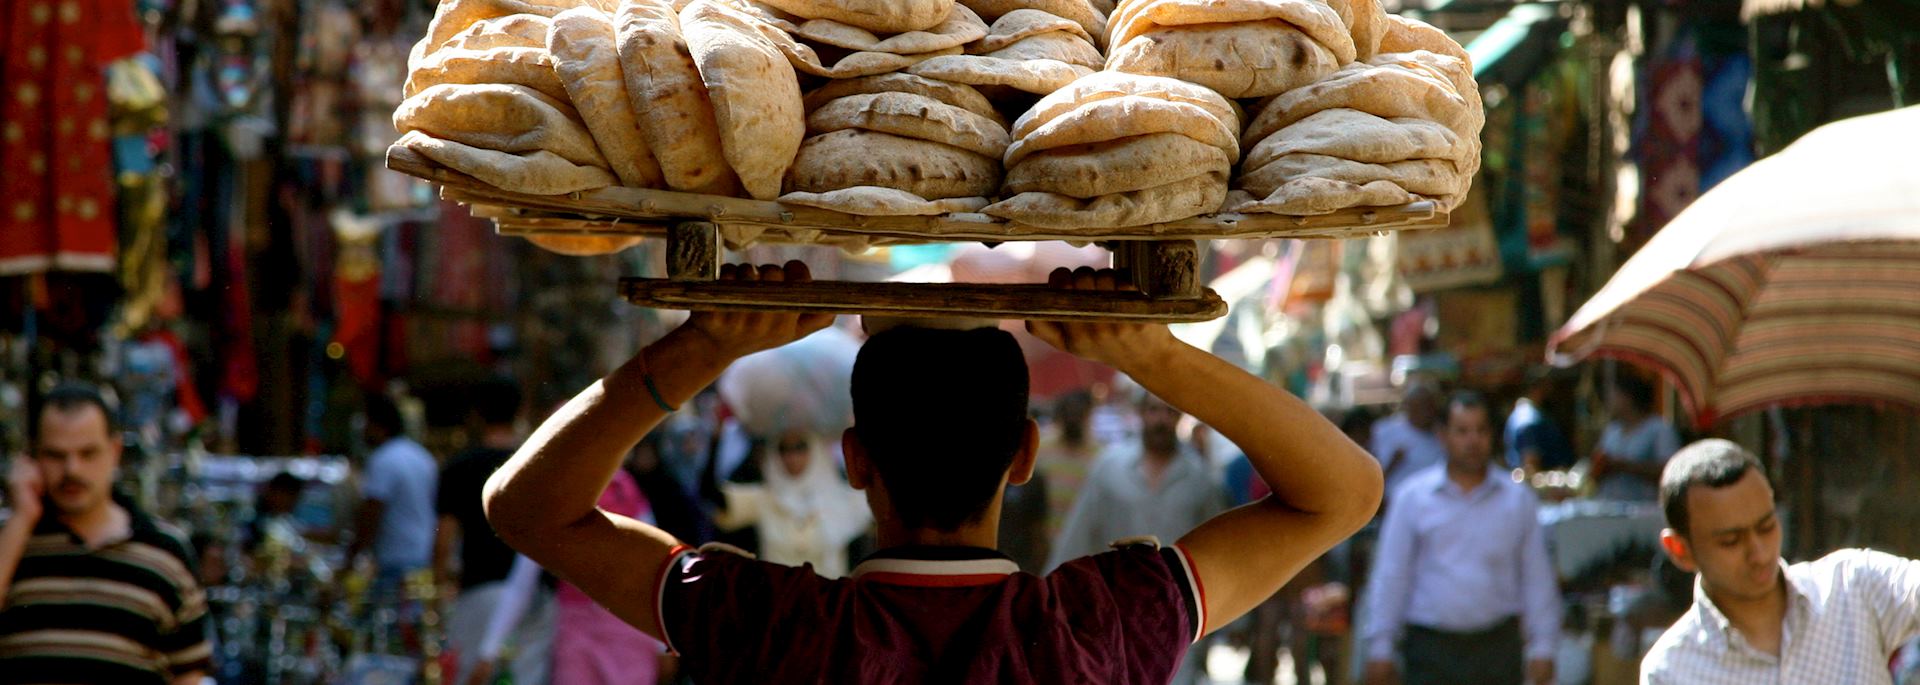 Bread maker, Khan el-Khalili